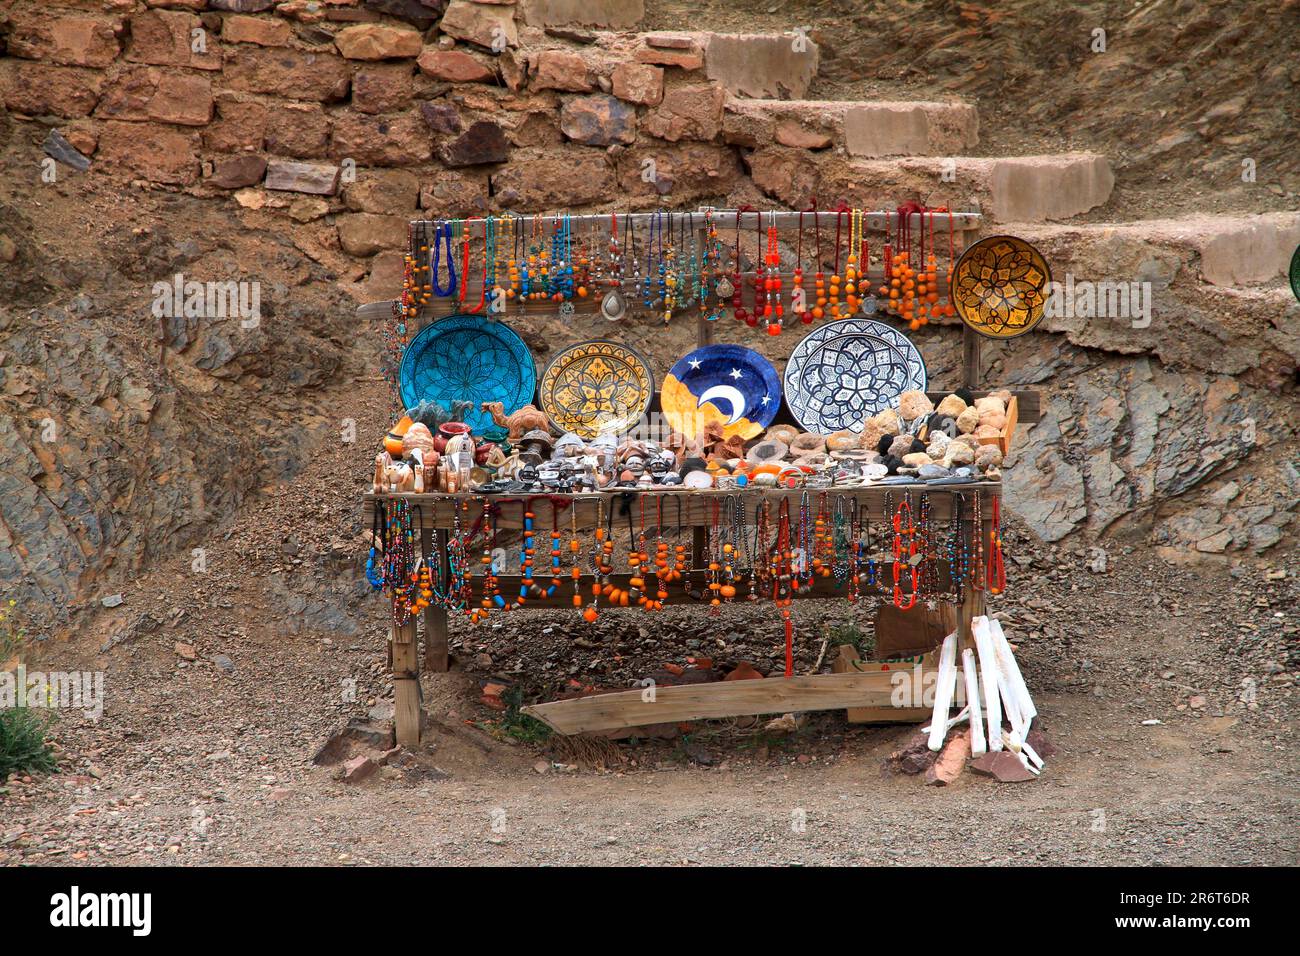 Einer der vielen Souvenirstände in den Tizi'n Tichka, dem Hohen Atlas Marokkos Stockfoto